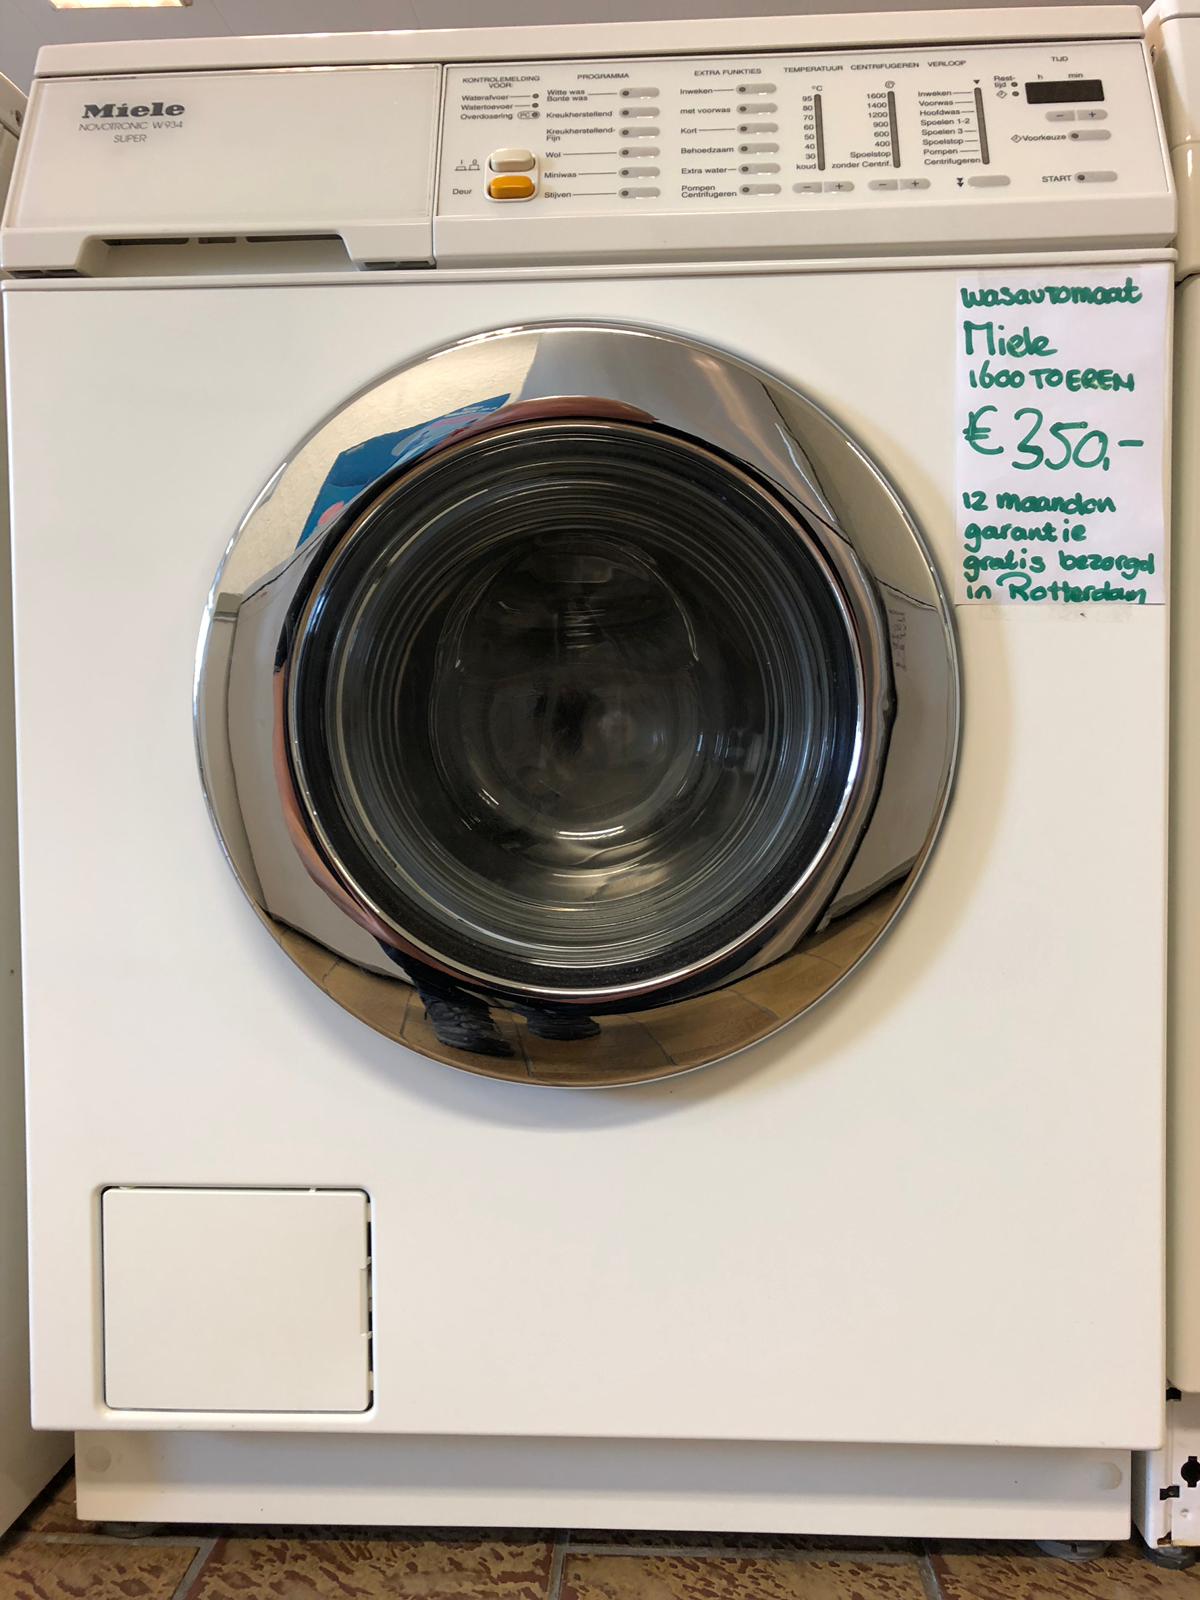 Implicaties Allerlei soorten moe Gereviseerde Miele wasmachine 1600 toeren met 12 maanden garantie - Ron's  Witgoedpaleis